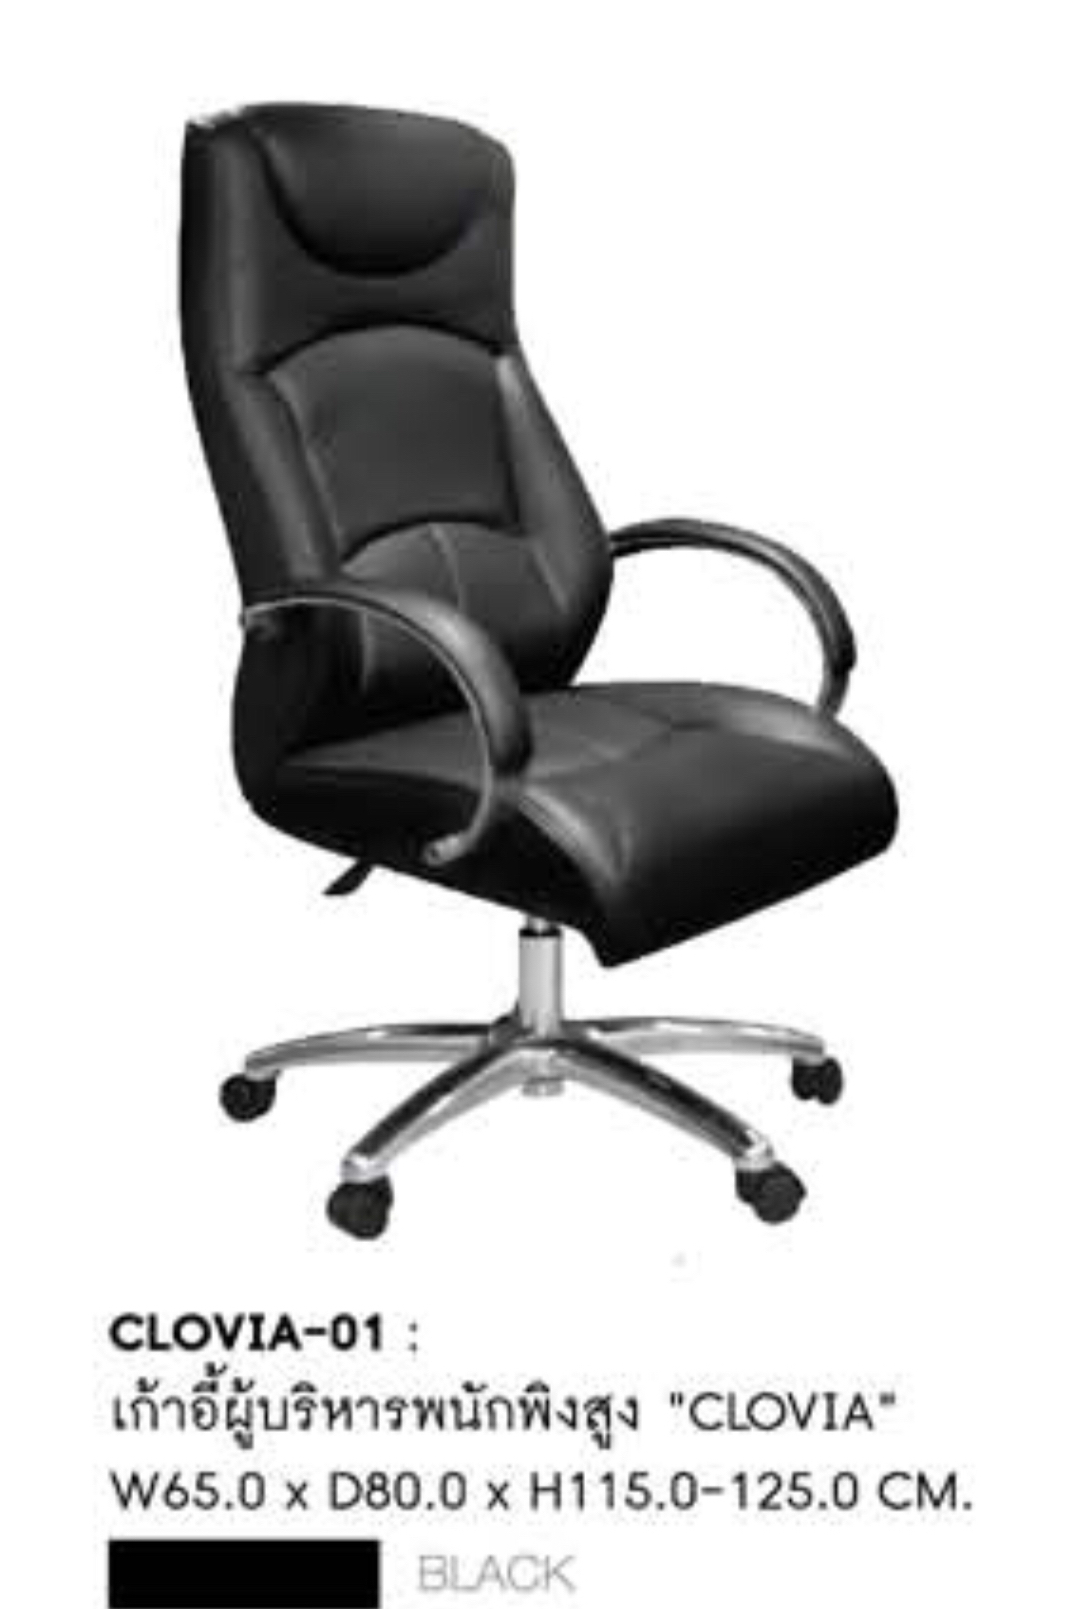 A-CLOVIA-01